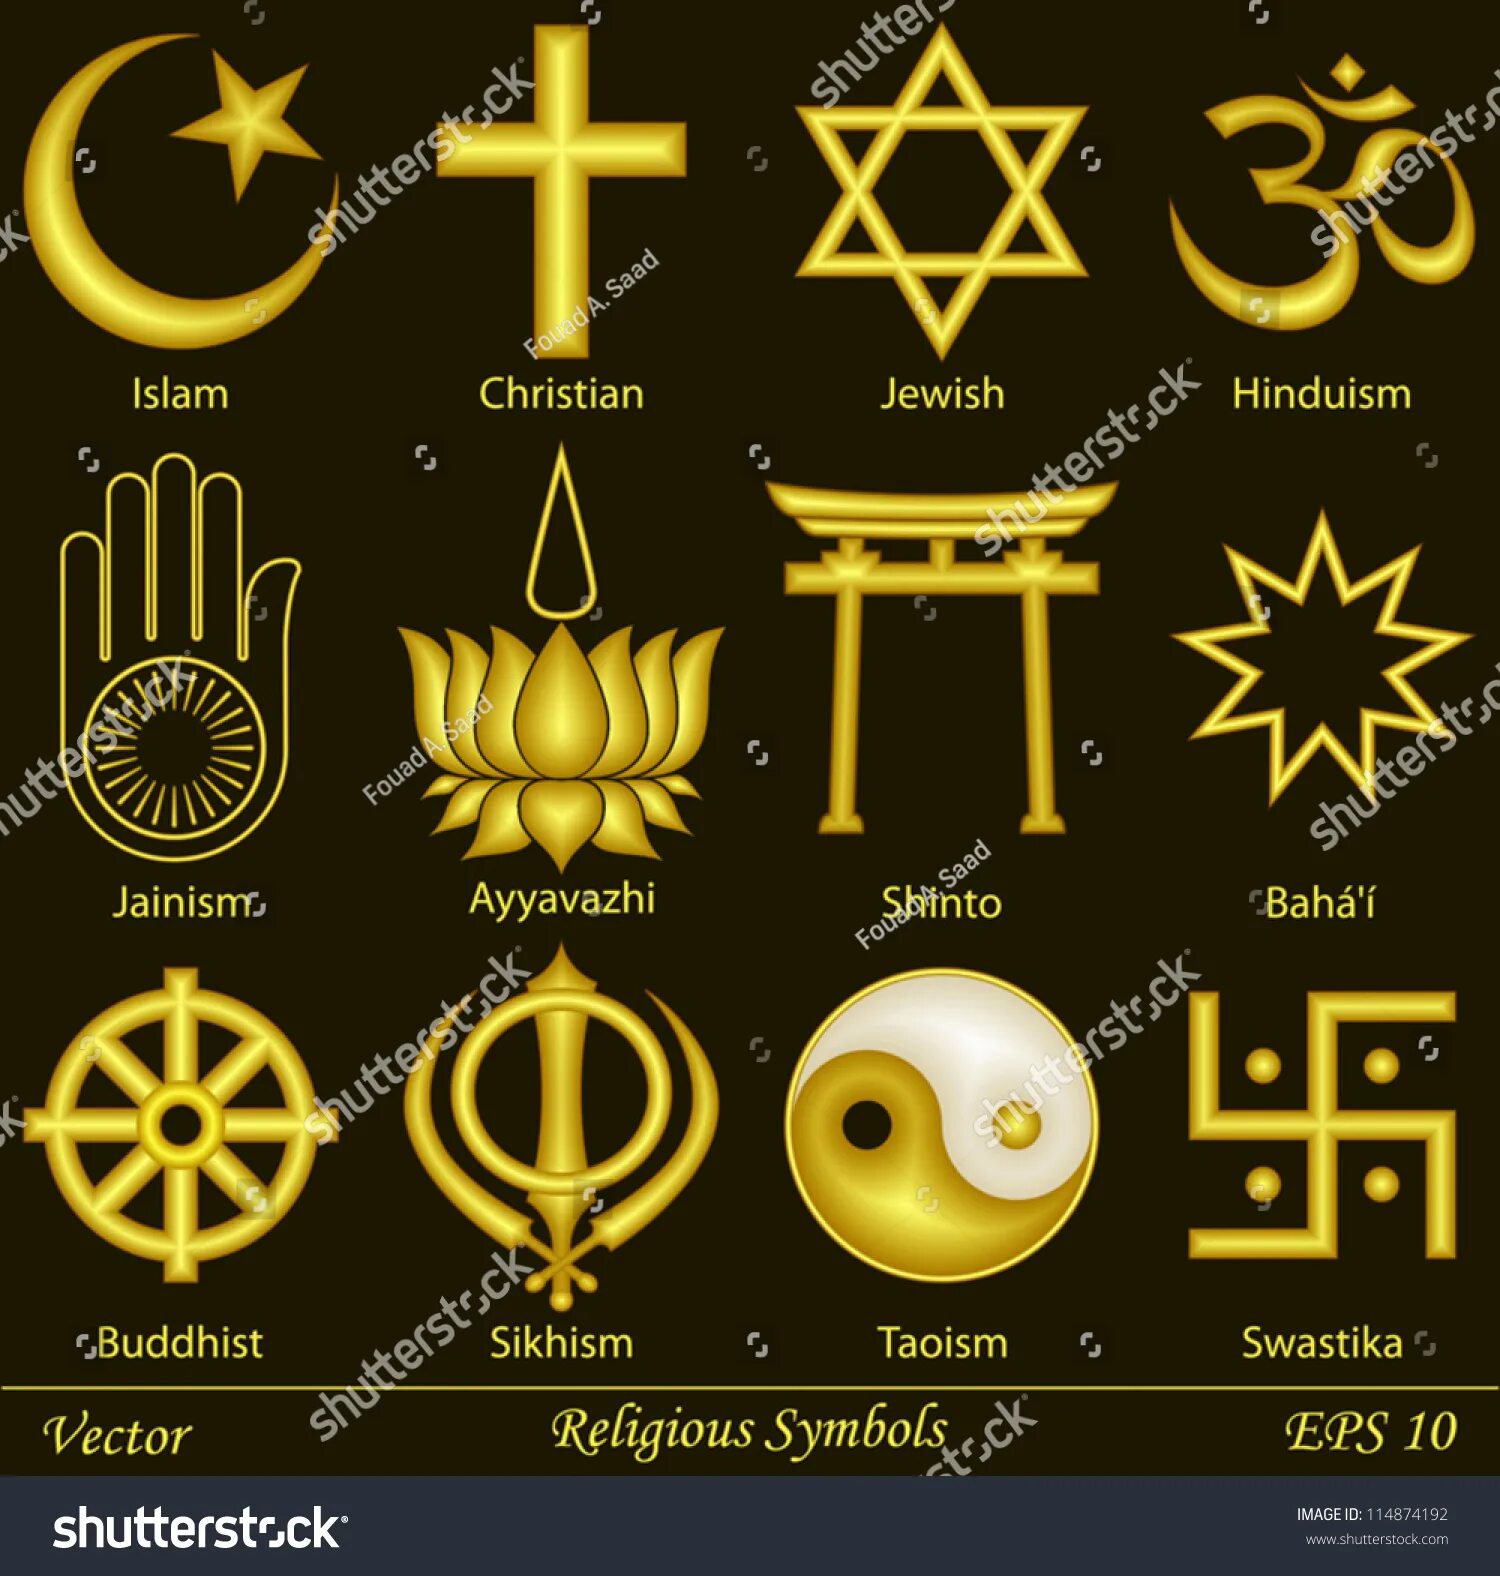 Назовите главный символ. Знаки религий. Религиозные символы. Религии символы с названиями. Символика разных религий.